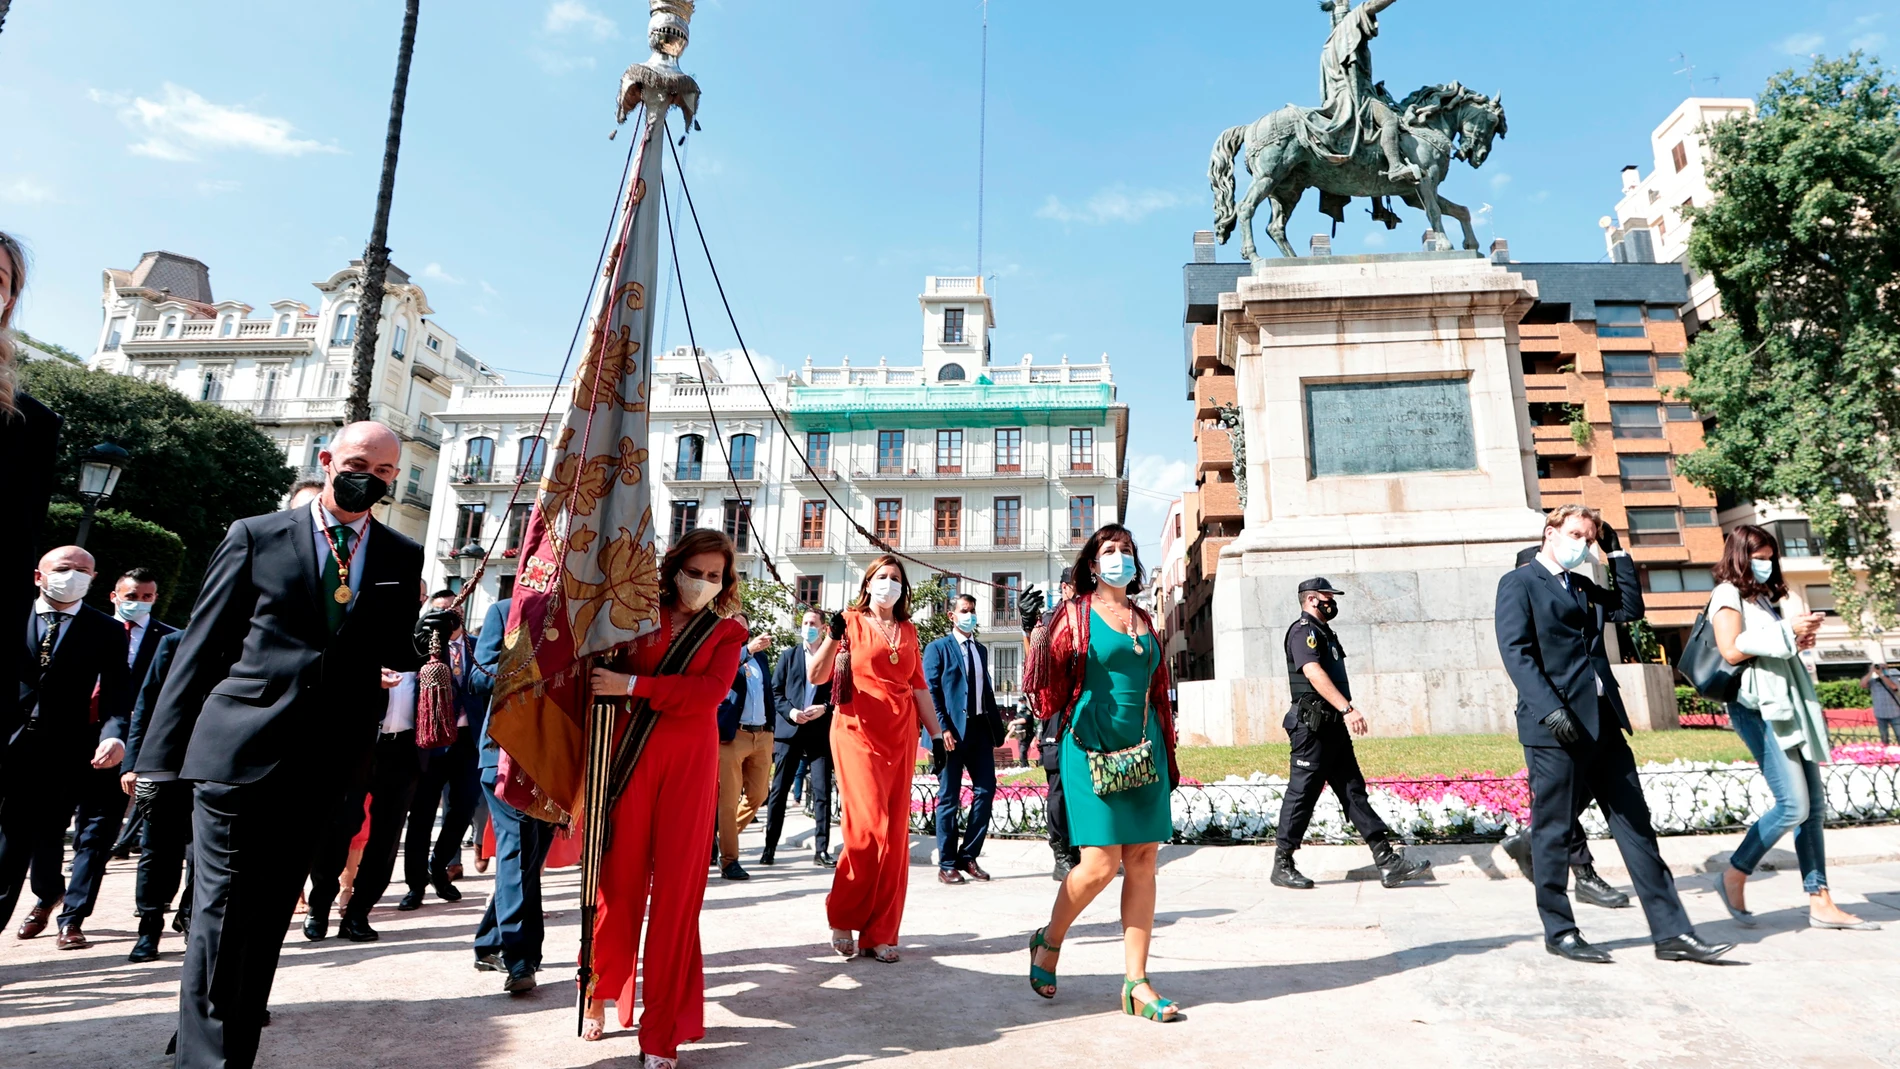 Vista general del traslado de la senyera valenciana a su paso junto a la estatua del Rey Jaime I durante la procesión cívica de este sábado en la que se celebra el 9 d'Octubre, simbólica fecha fundacional del pueblo valenciano.